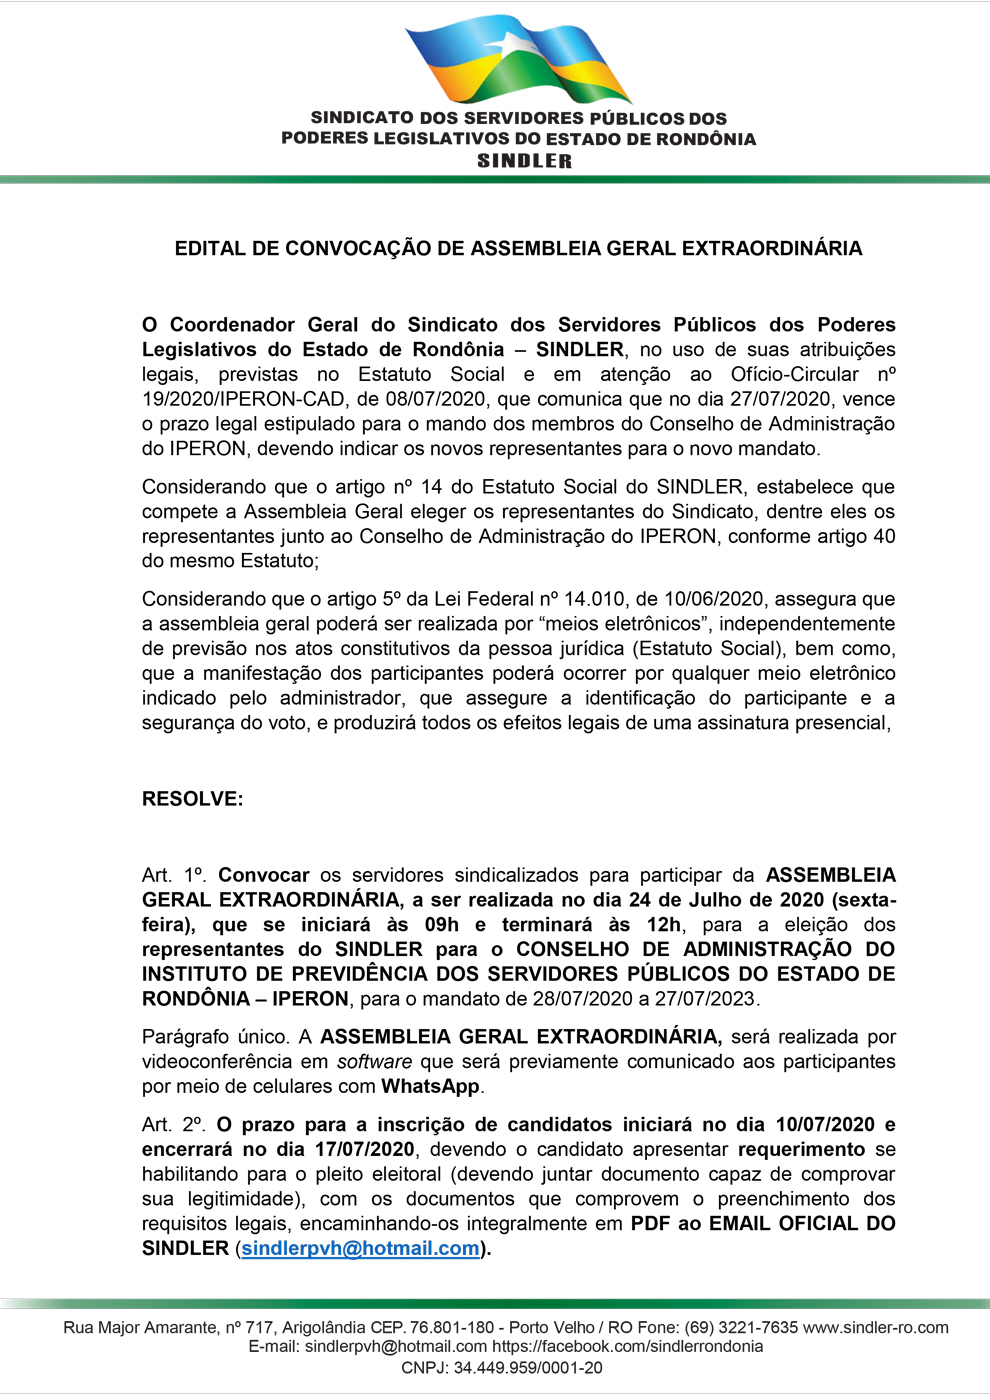 EDITAL DE CONVOCAÇÃO DE ASSEMBLEIA GERAL EXTRAORDINÁRIA mesclado 1